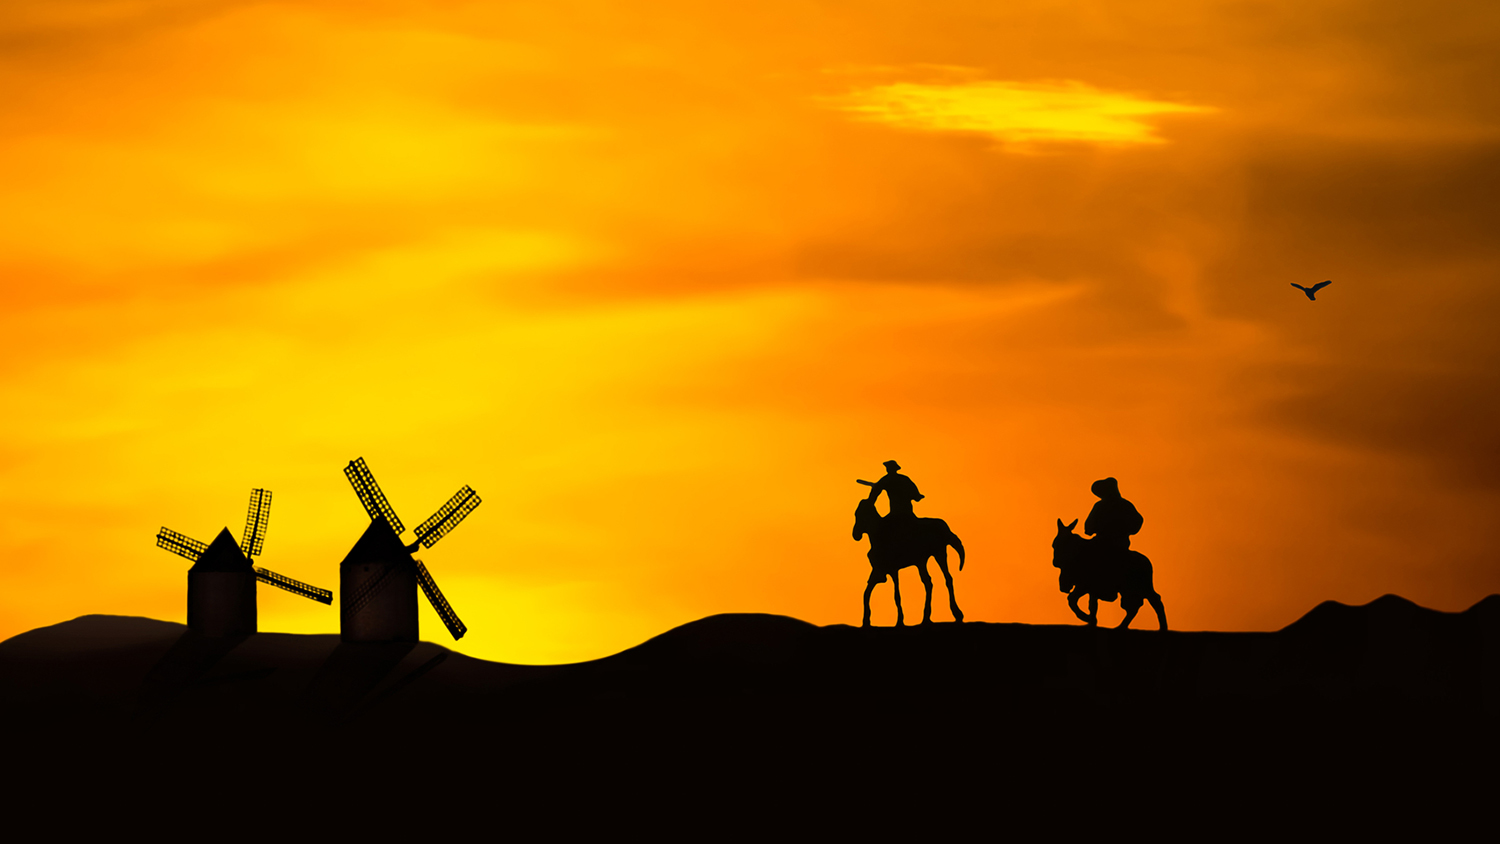 Målning av Don Quixote och Sancho Panza som rider mot väderkvarnar i solnedgången.